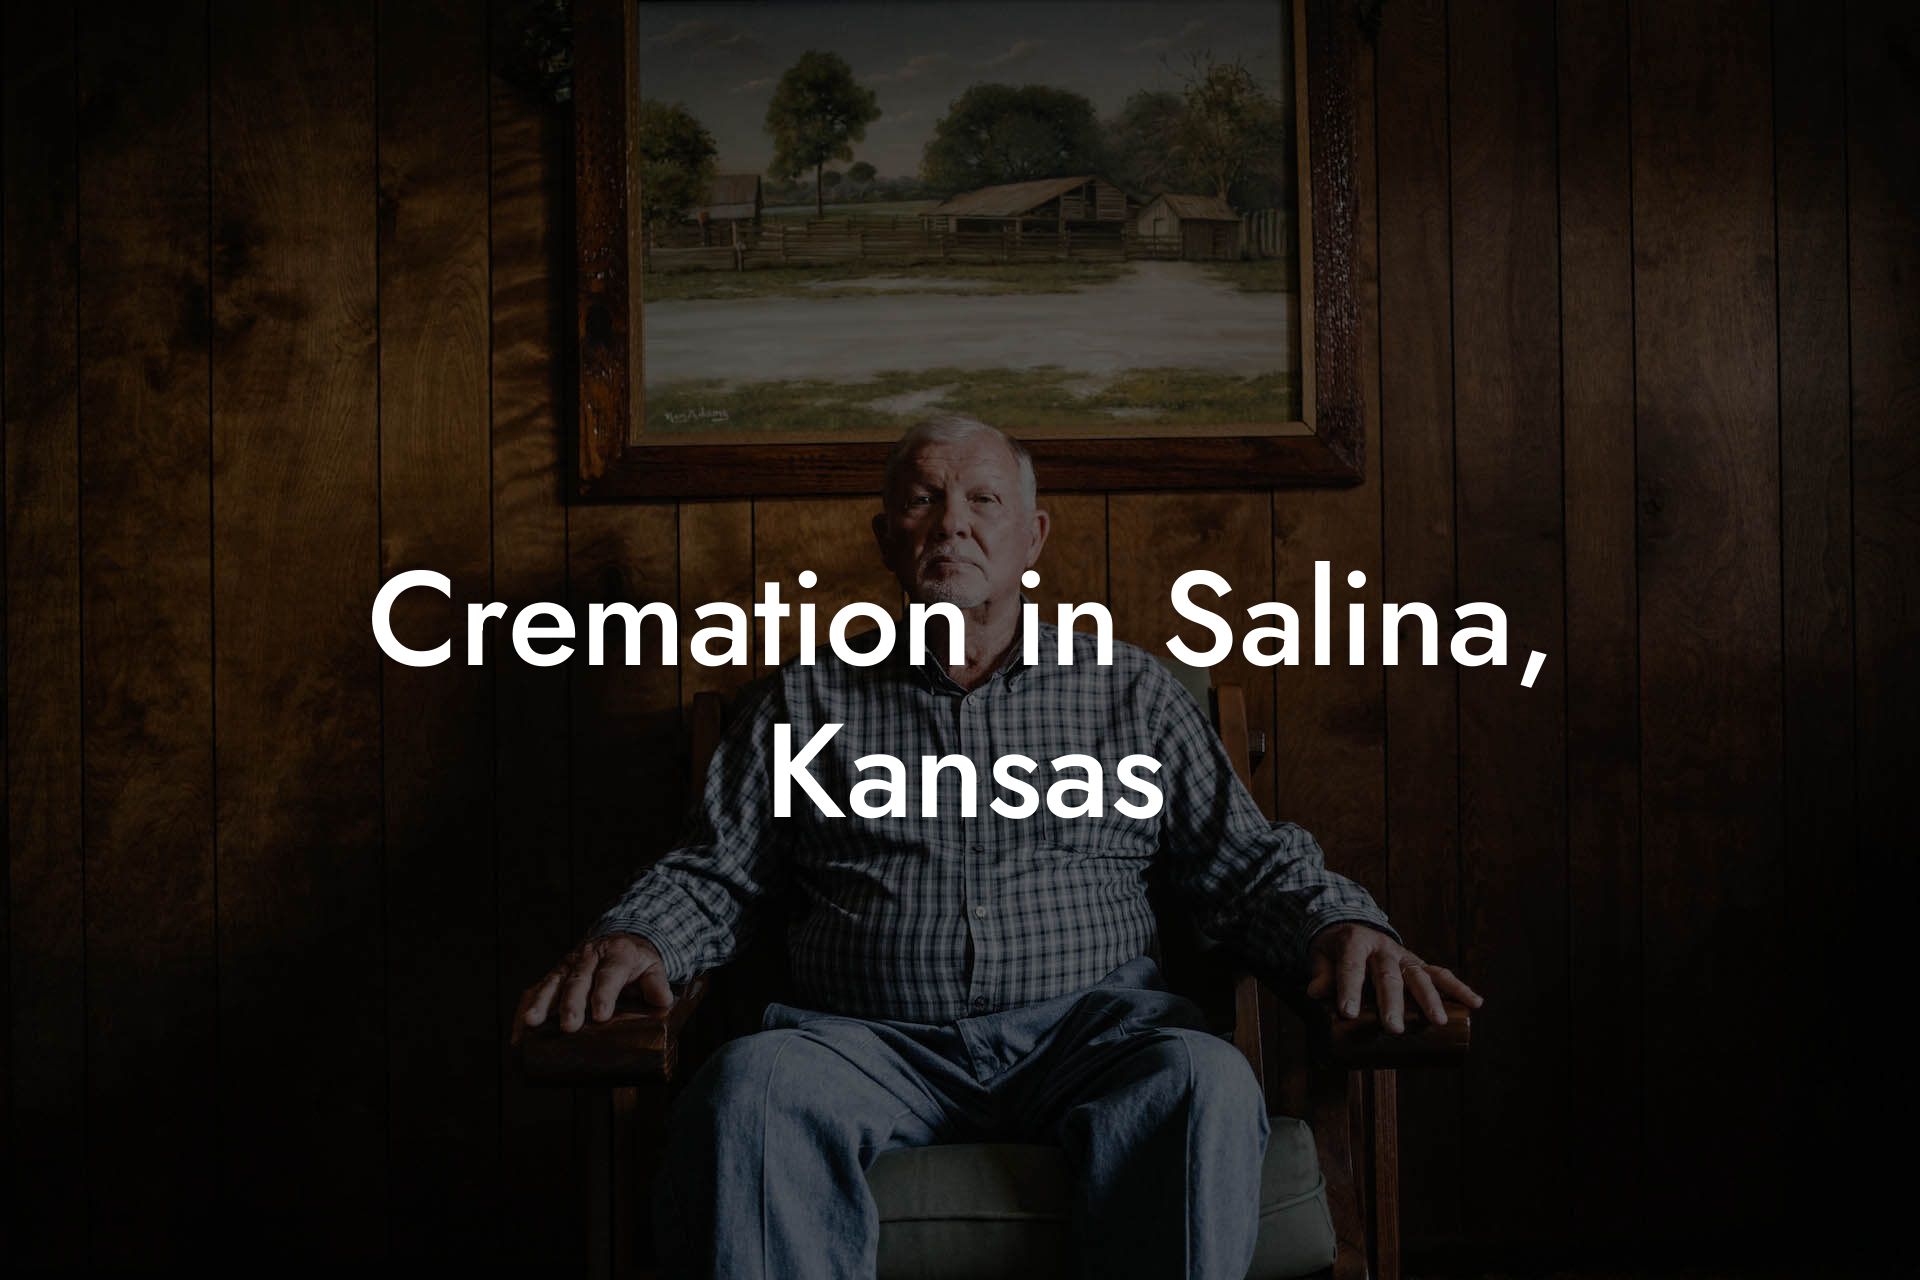 Cremation in Salina, Kansas